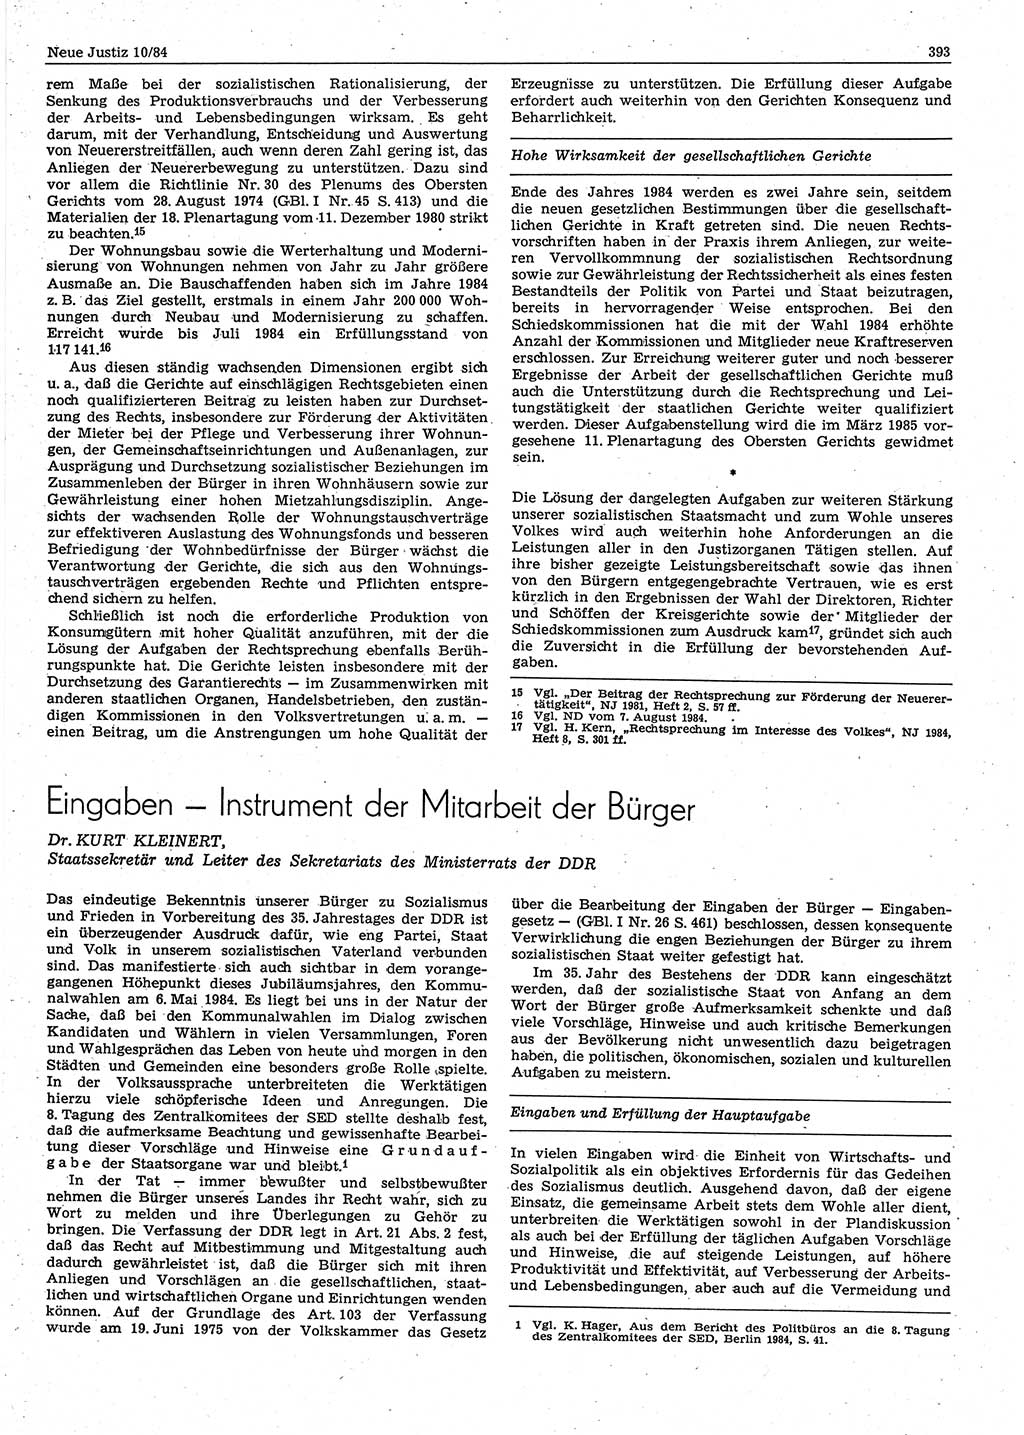 Neue Justiz (NJ), Zeitschrift für sozialistisches Recht und Gesetzlichkeit [Deutsche Demokratische Republik (DDR)], 38. Jahrgang 1984, Seite 393 (NJ DDR 1984, S. 393)